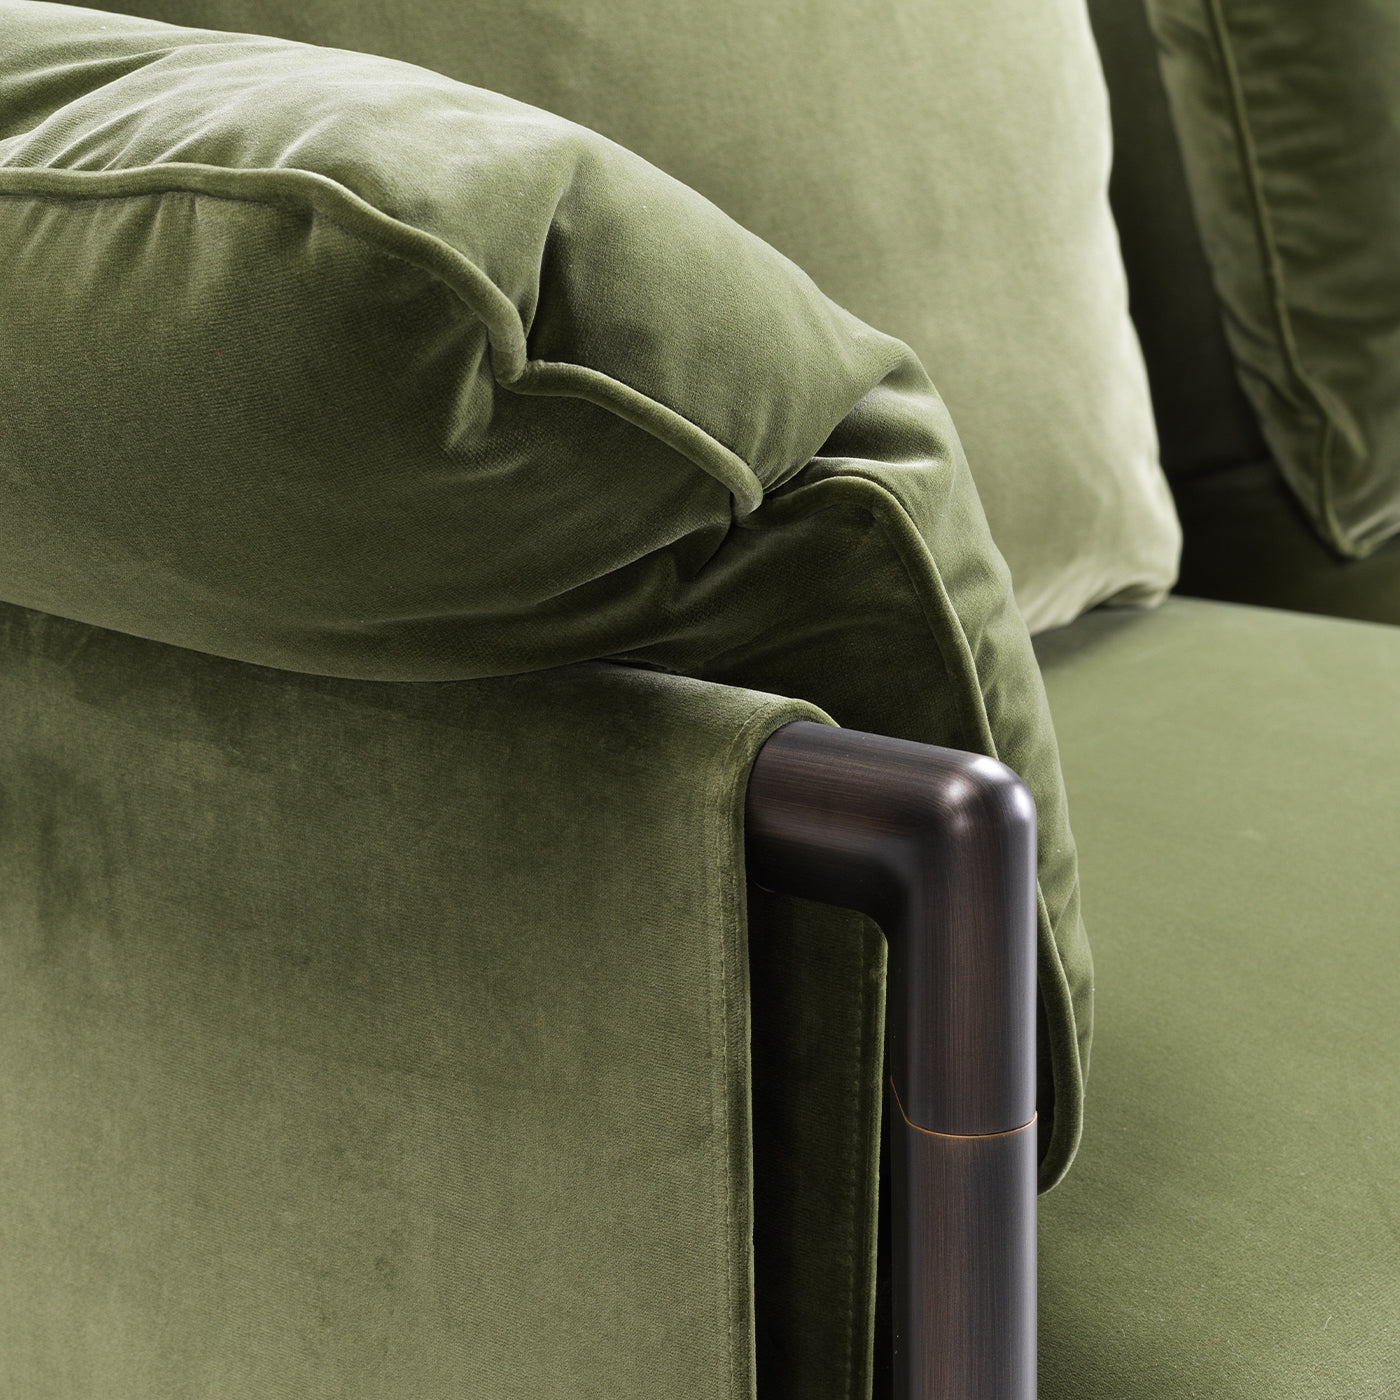 Dodo Green Sofa by Stefano Giovannoni - Alternative view 3